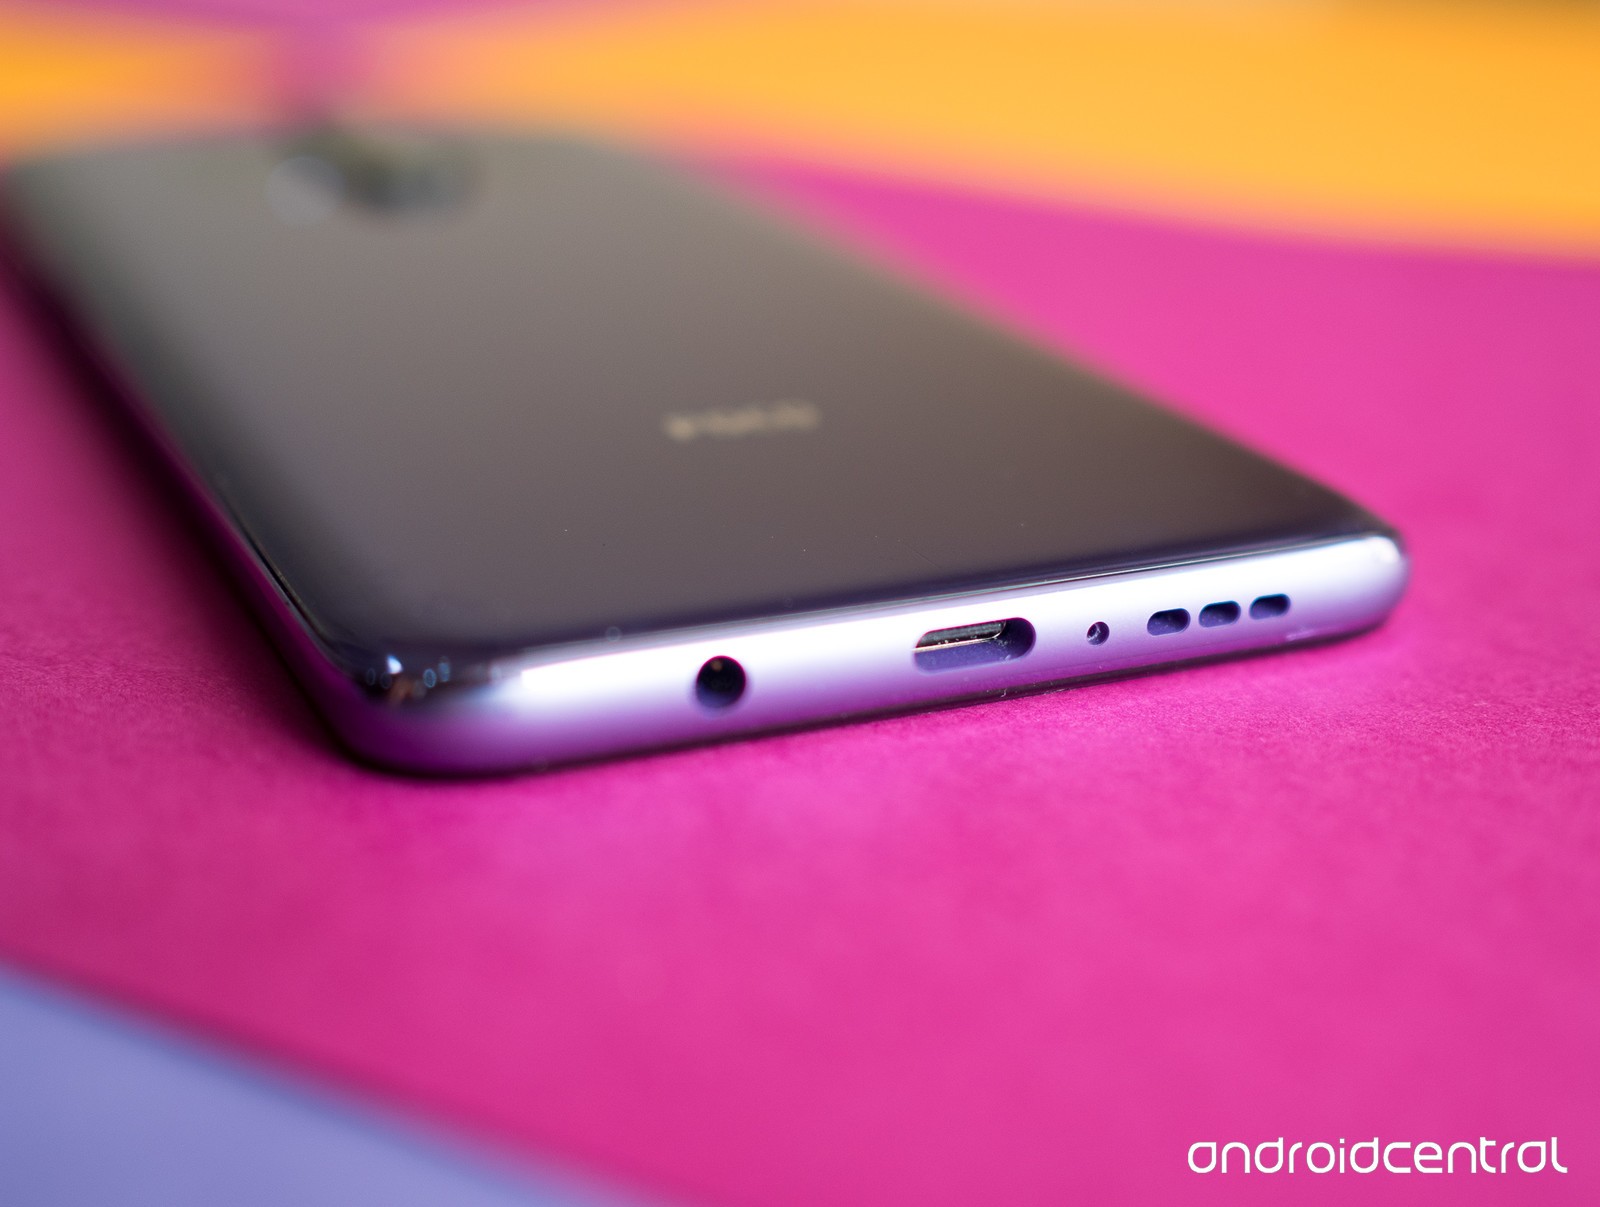 Poco X2 chính thức ra mắt: Phiên bản đổi tên của
Redmi K30 với Snapdragon 730G, màn hình 120Hz, giá chỉ hơn 5
triệu